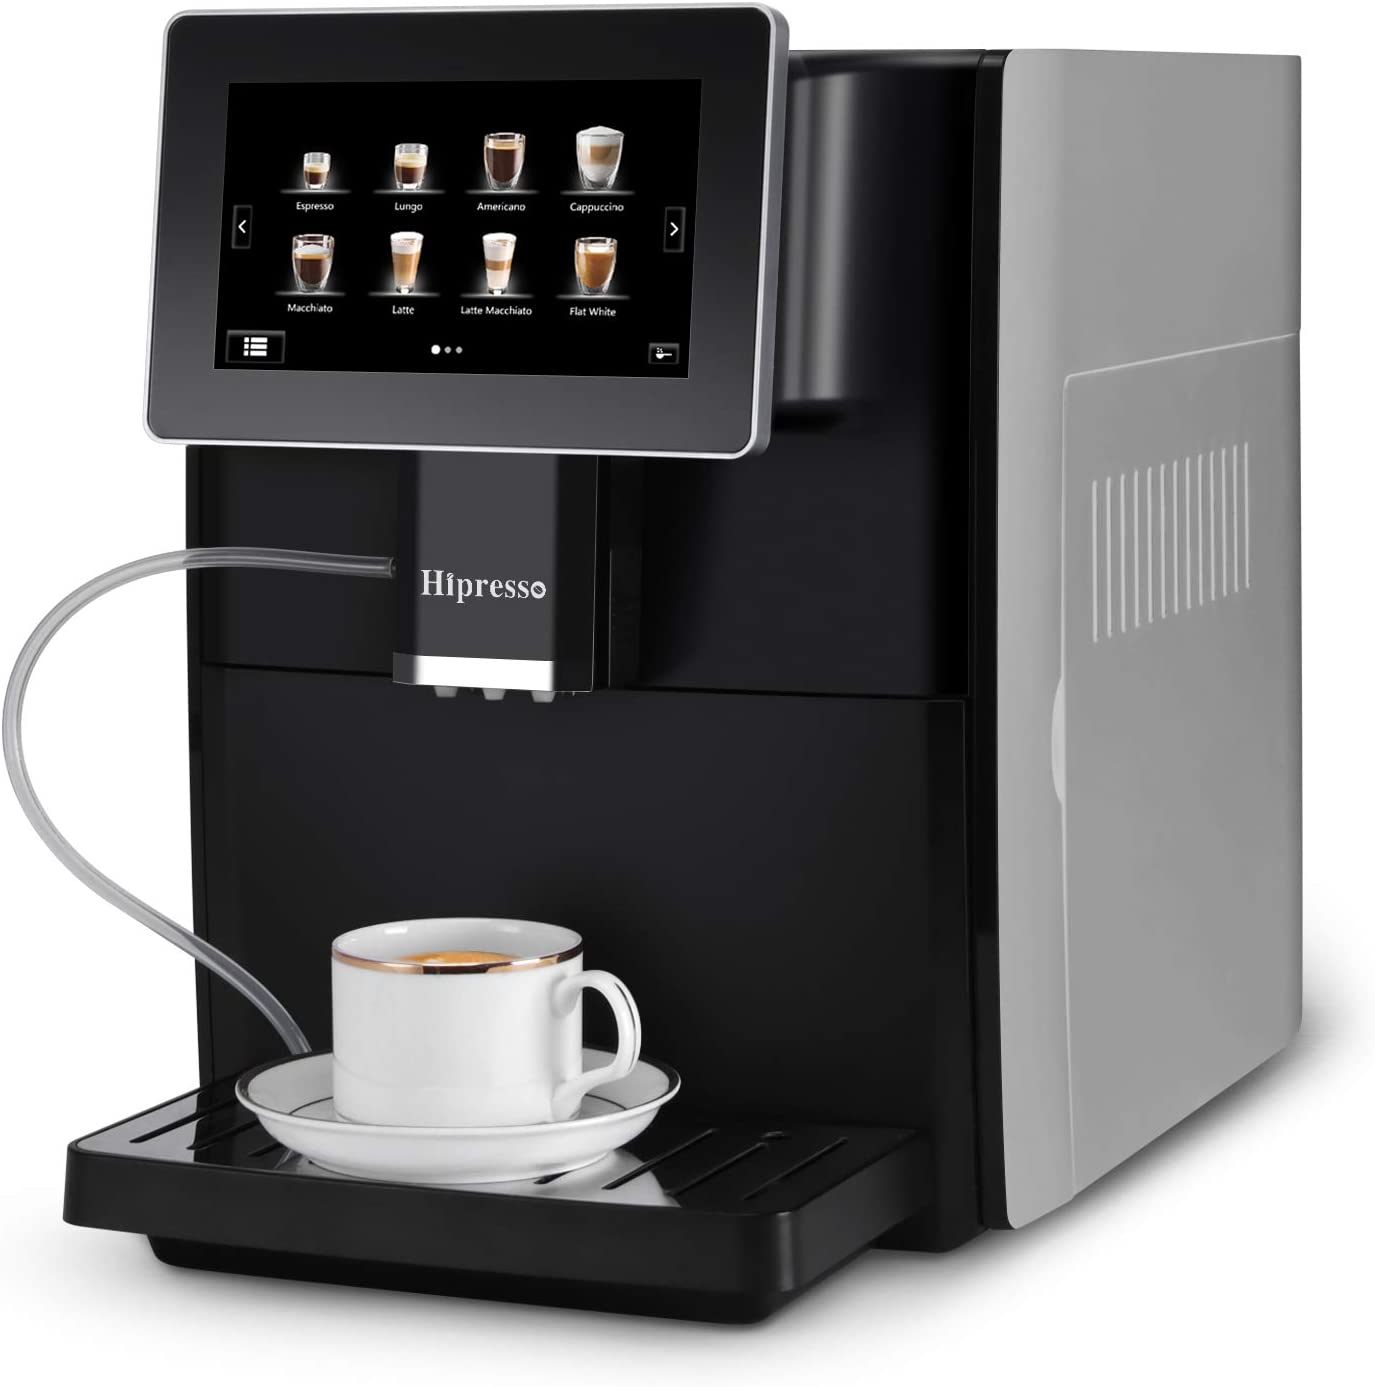 Hipresso Super-automatic Espresso Coffee Machine with Large 7 Inches HD TFT Display for Brewing Americano,Cappuccino, Latte, Macchiato,Flat White, Espresso...